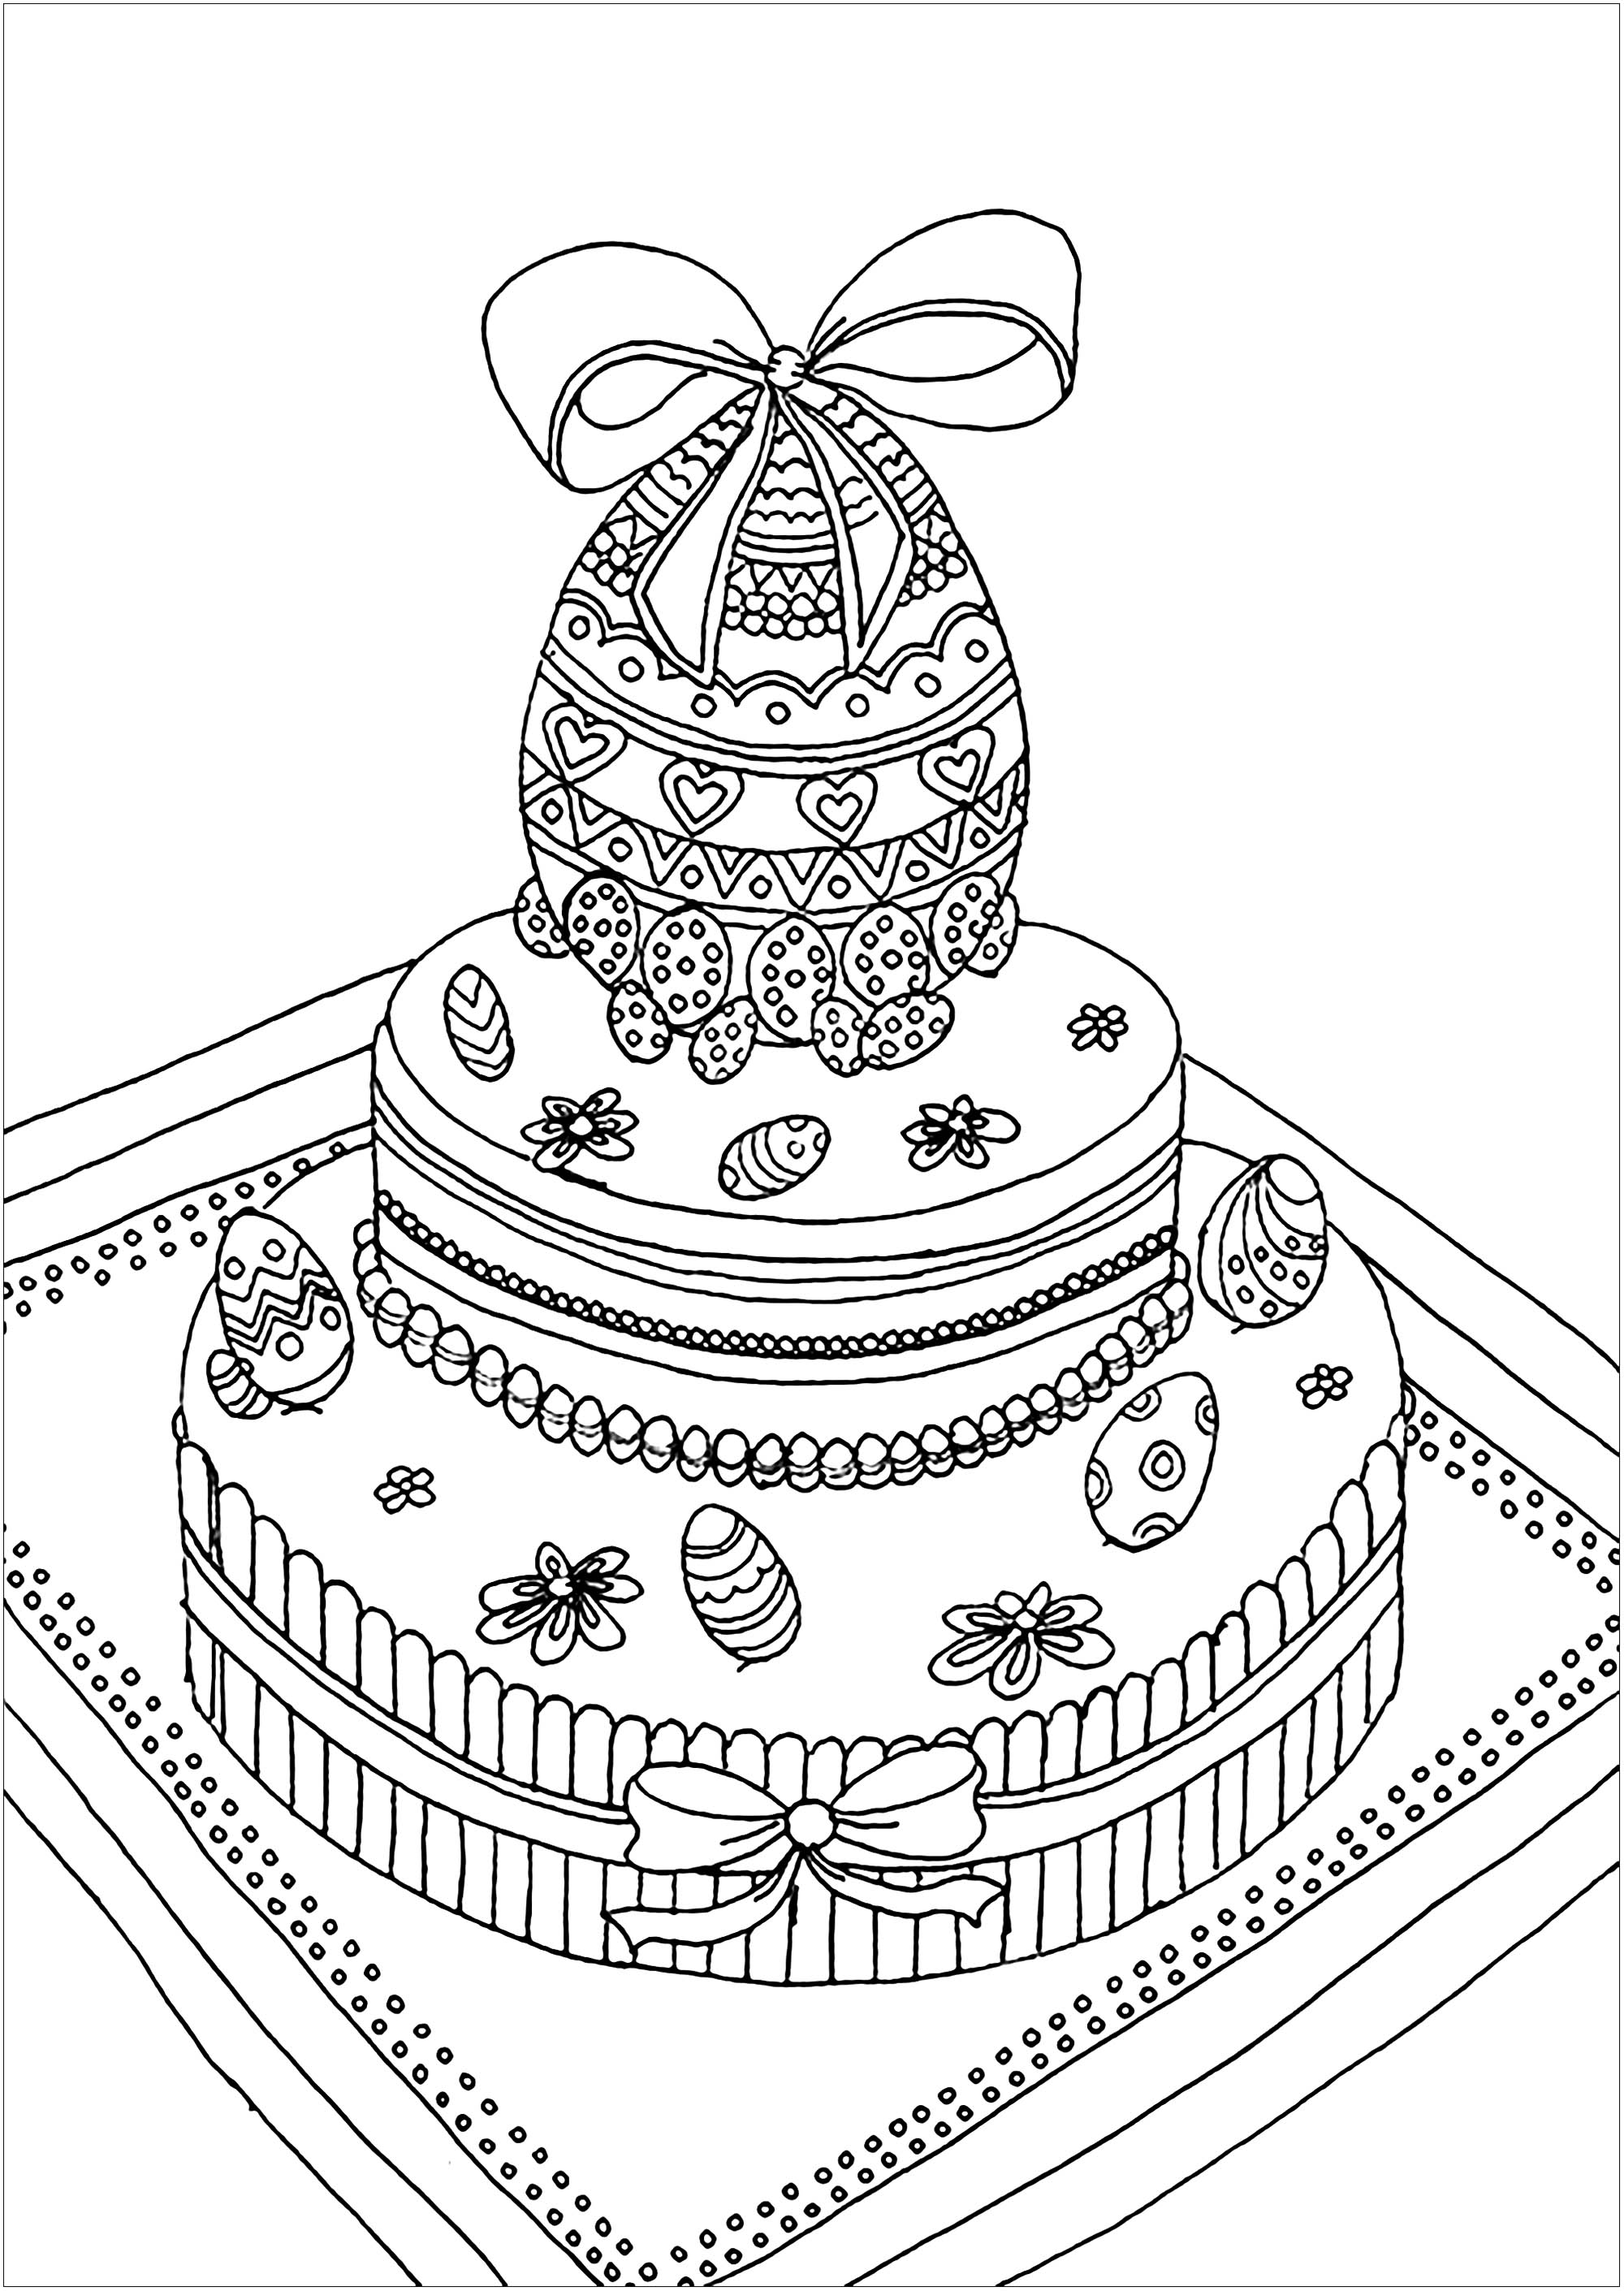 Incrível ovo de Páscoa no topo de um bolo, com um aspeto delicioso, Artista : Kerozen